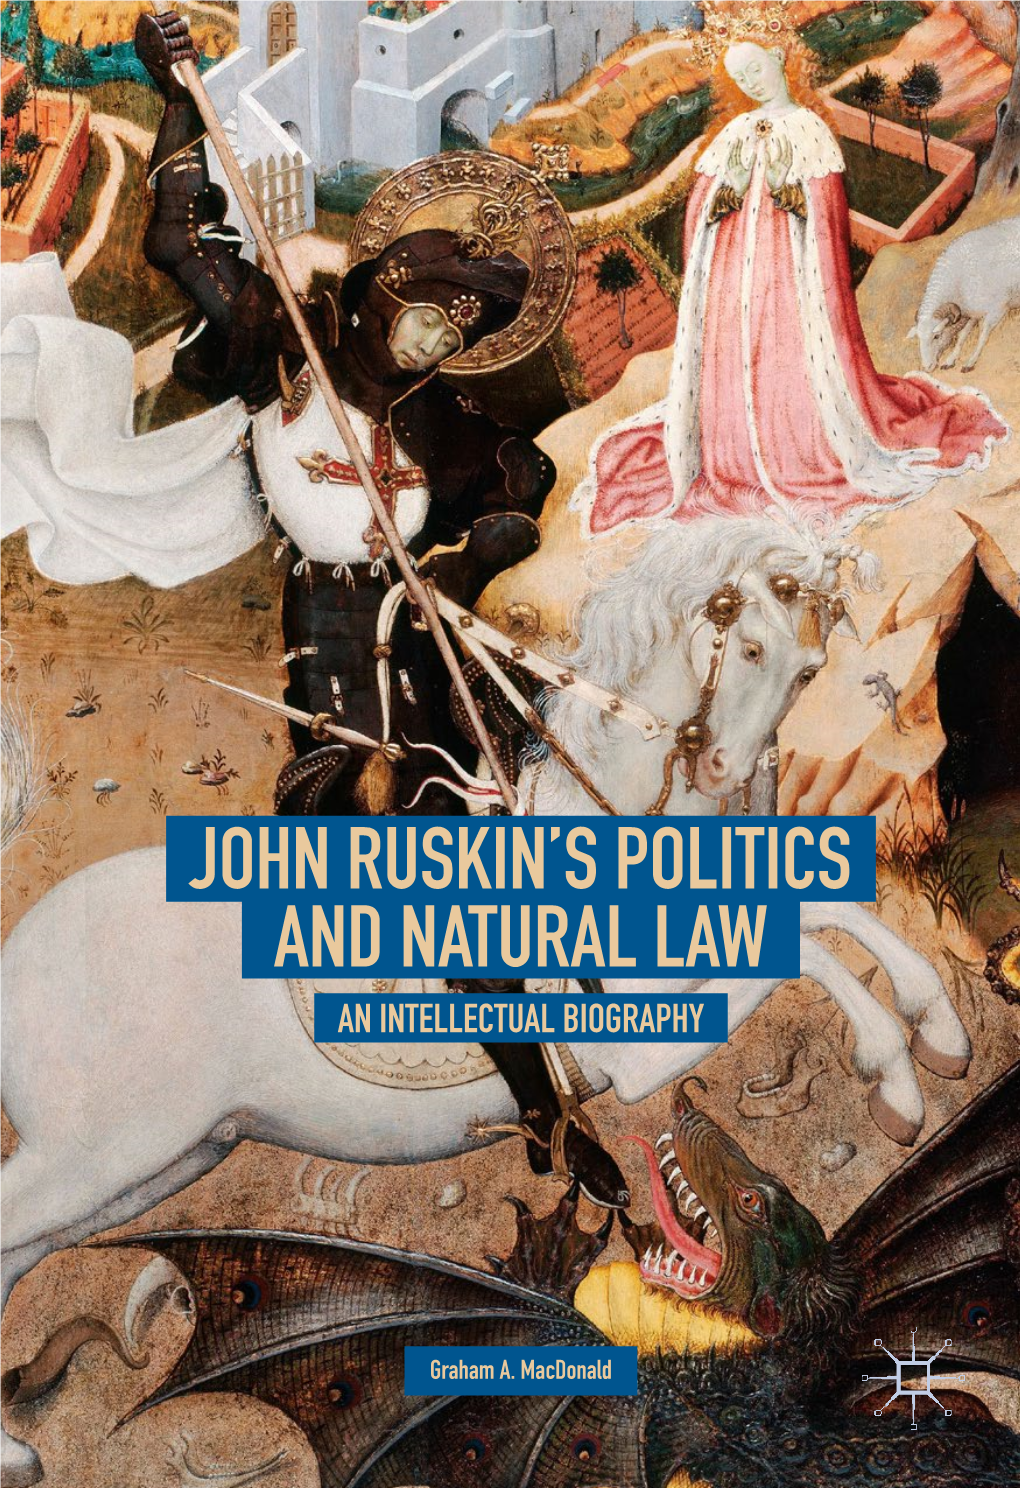 John Ruskin's Politics and Natural